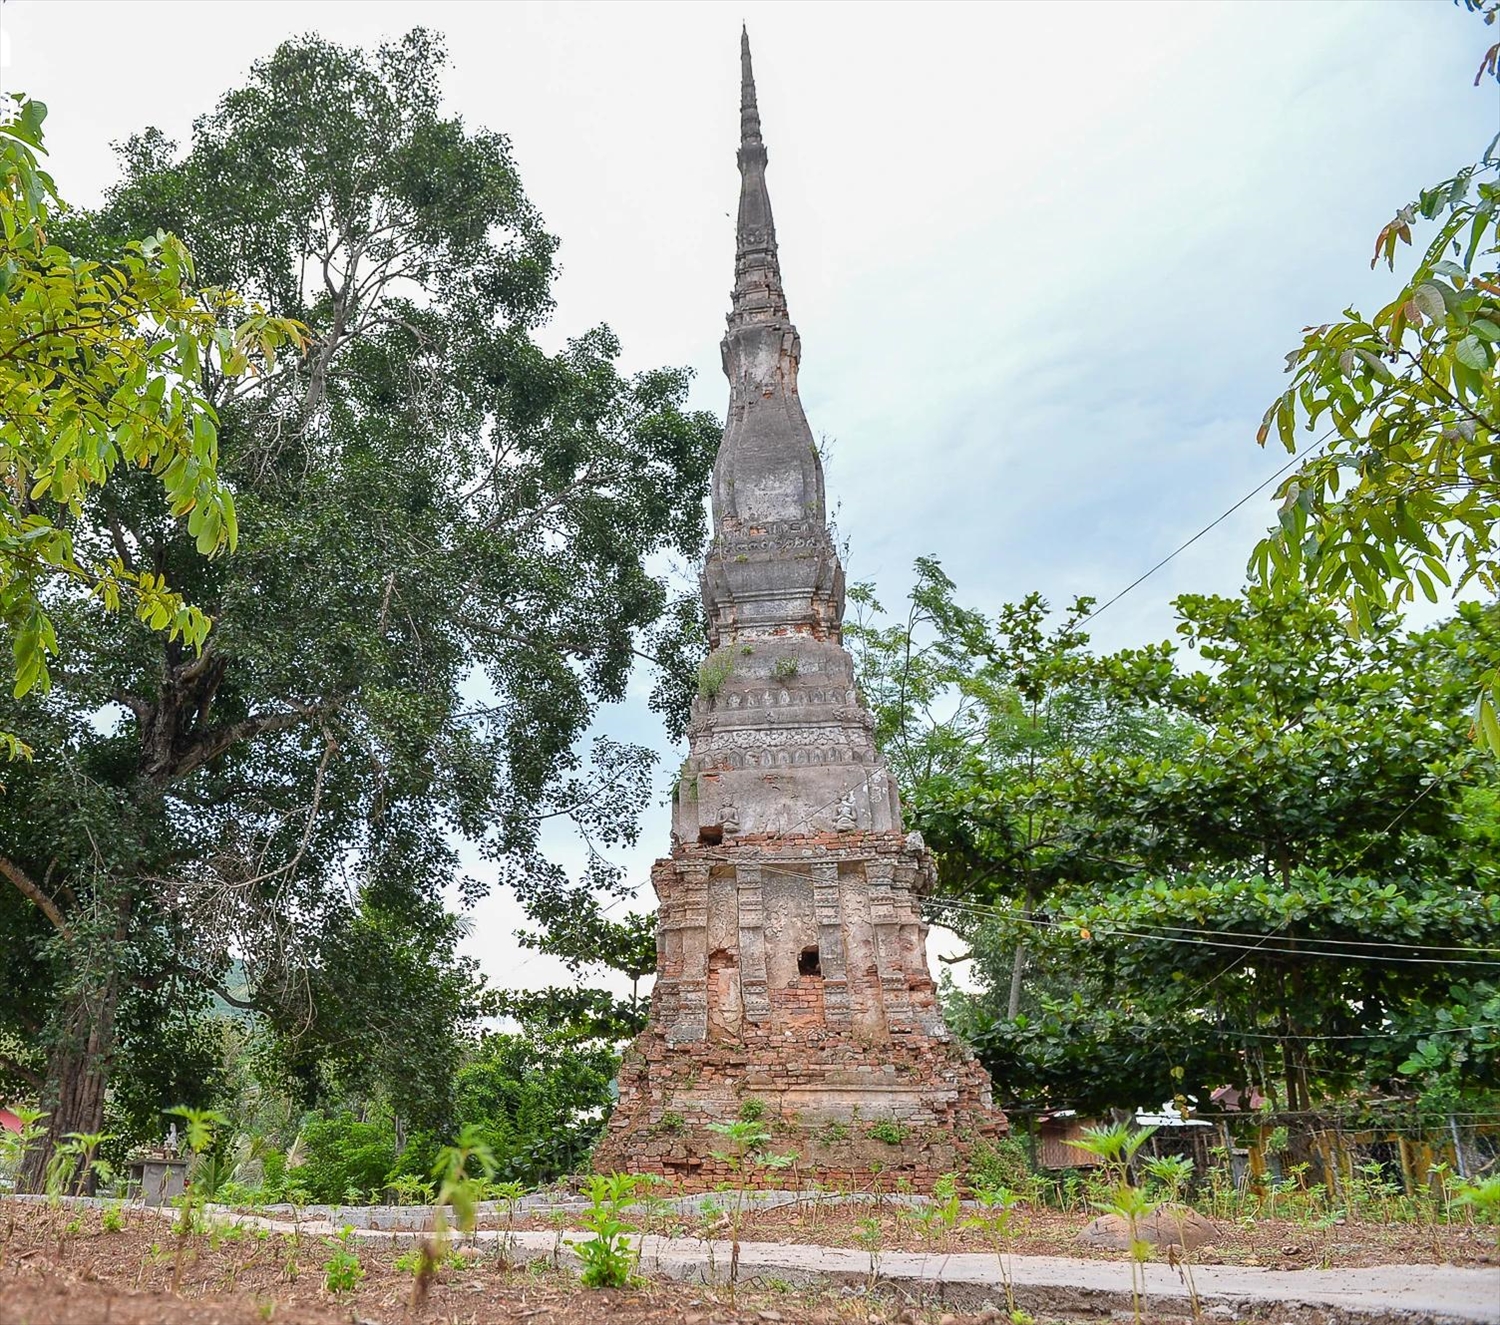 Huyền bí tháp cổ Yên Hòa bên dòng Nậm Nơn